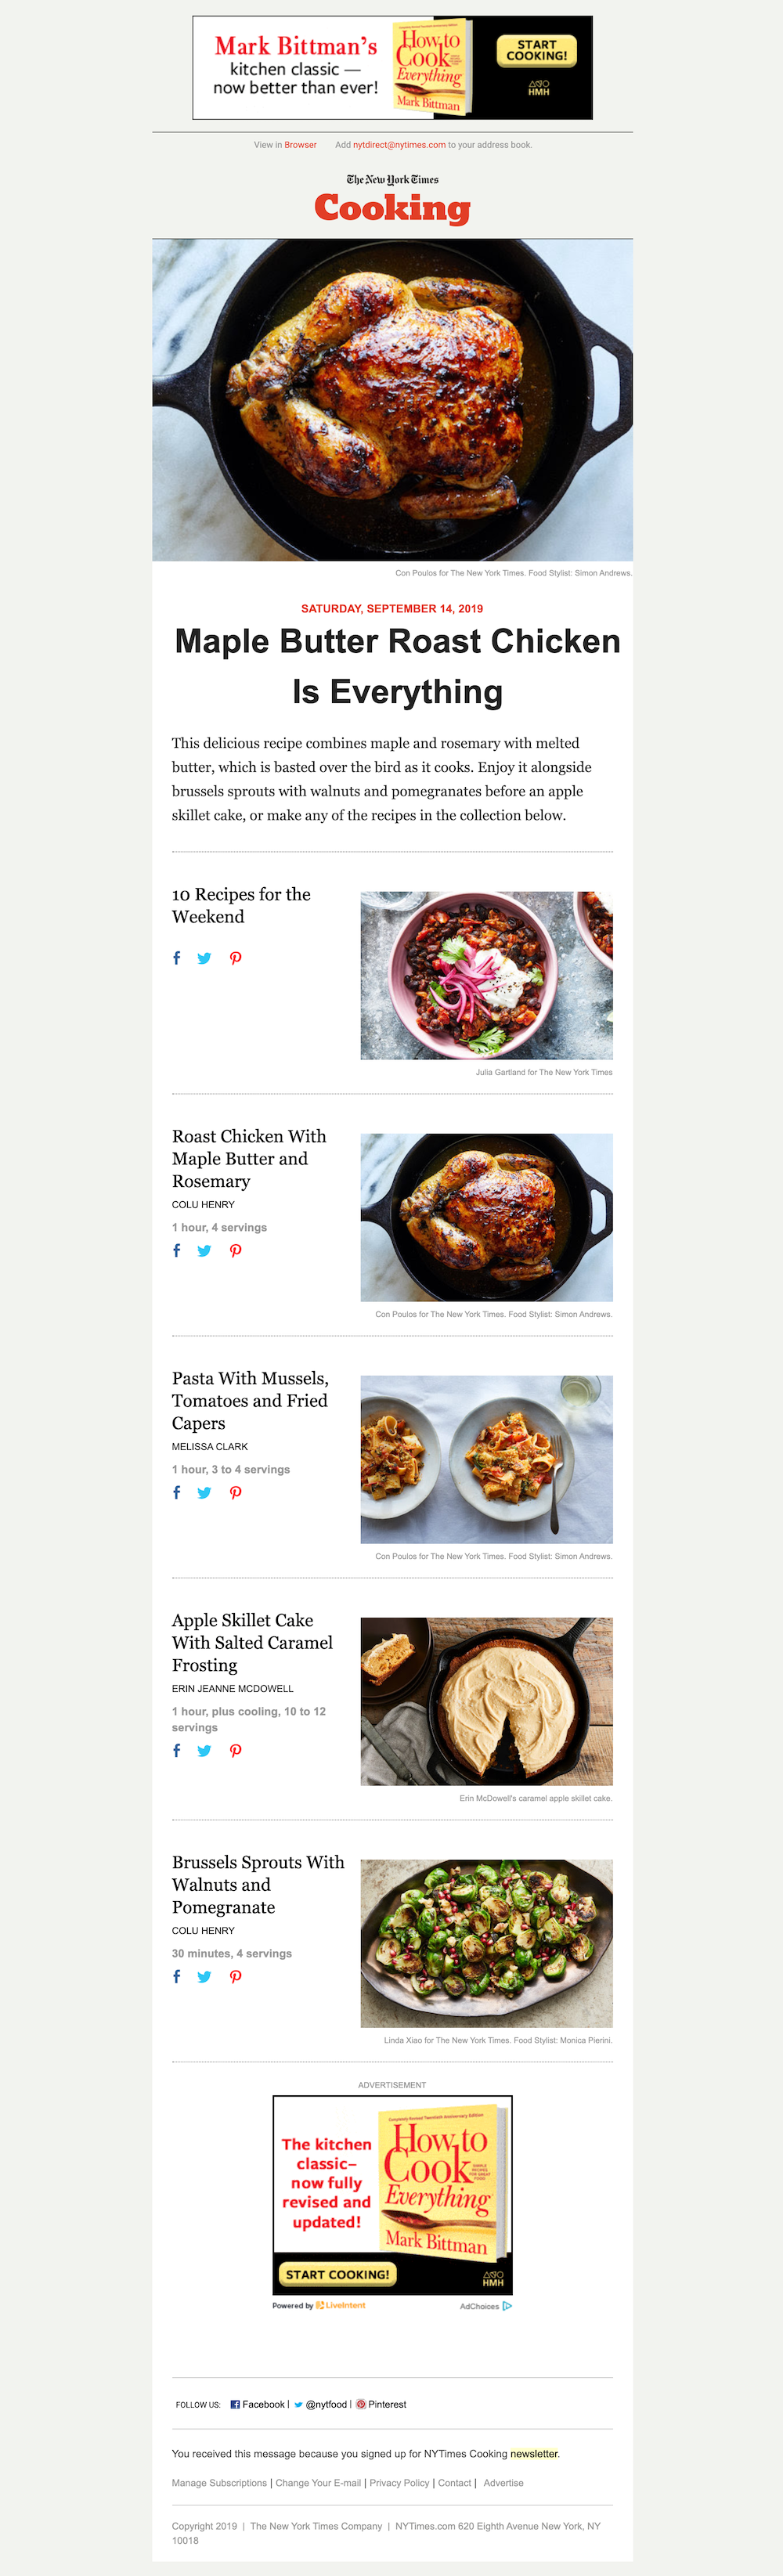 Newsletter kulinarny New York Times Cooking zawiera wysokiej jakości zdjęcia wybranych przepisów